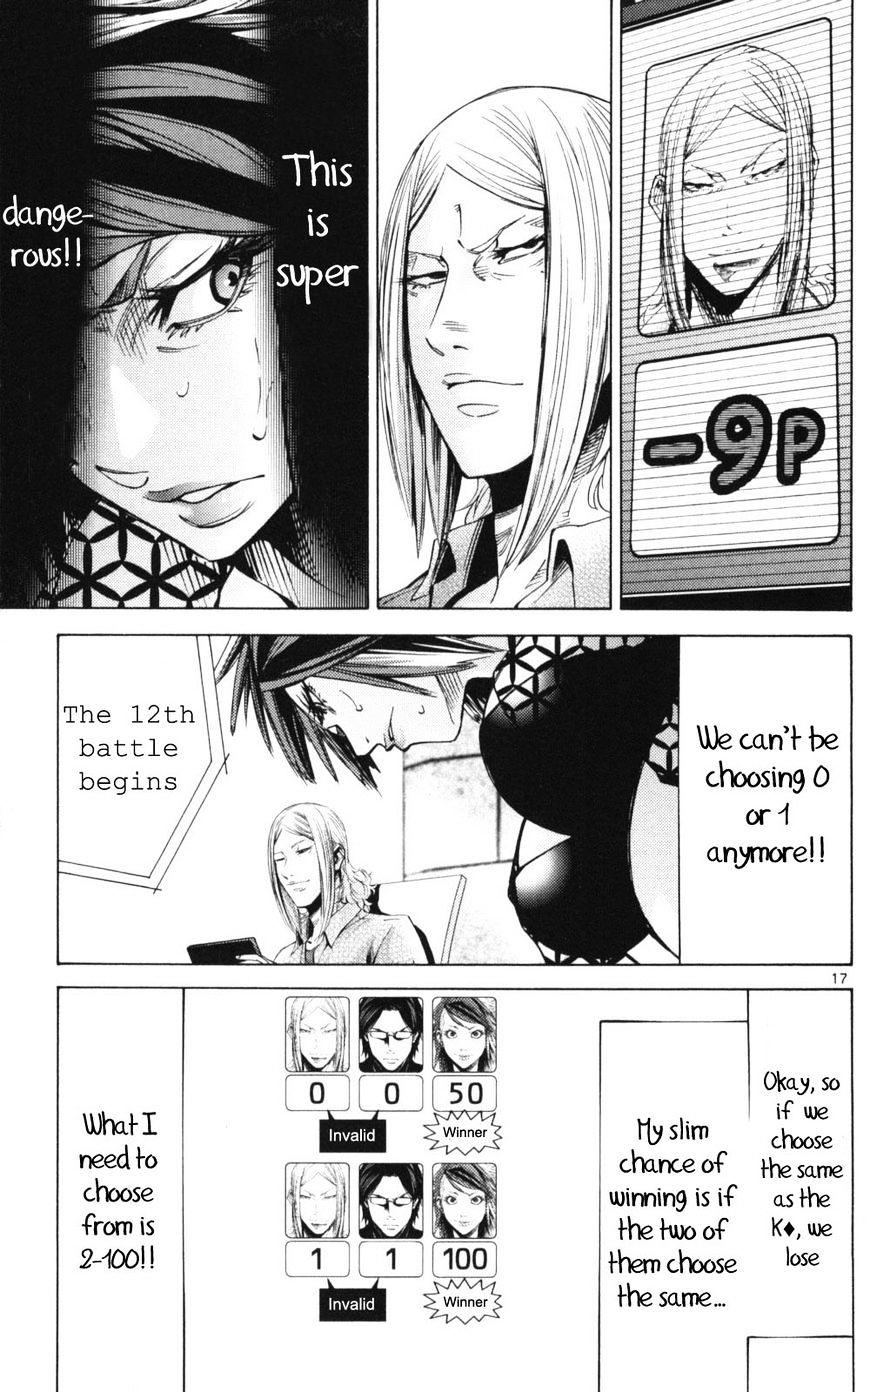 Imawa No Kuni No Alice Chapter 51.3 : Side Story 6 - King Of Diamonds (3) page 17 - Mangakakalot